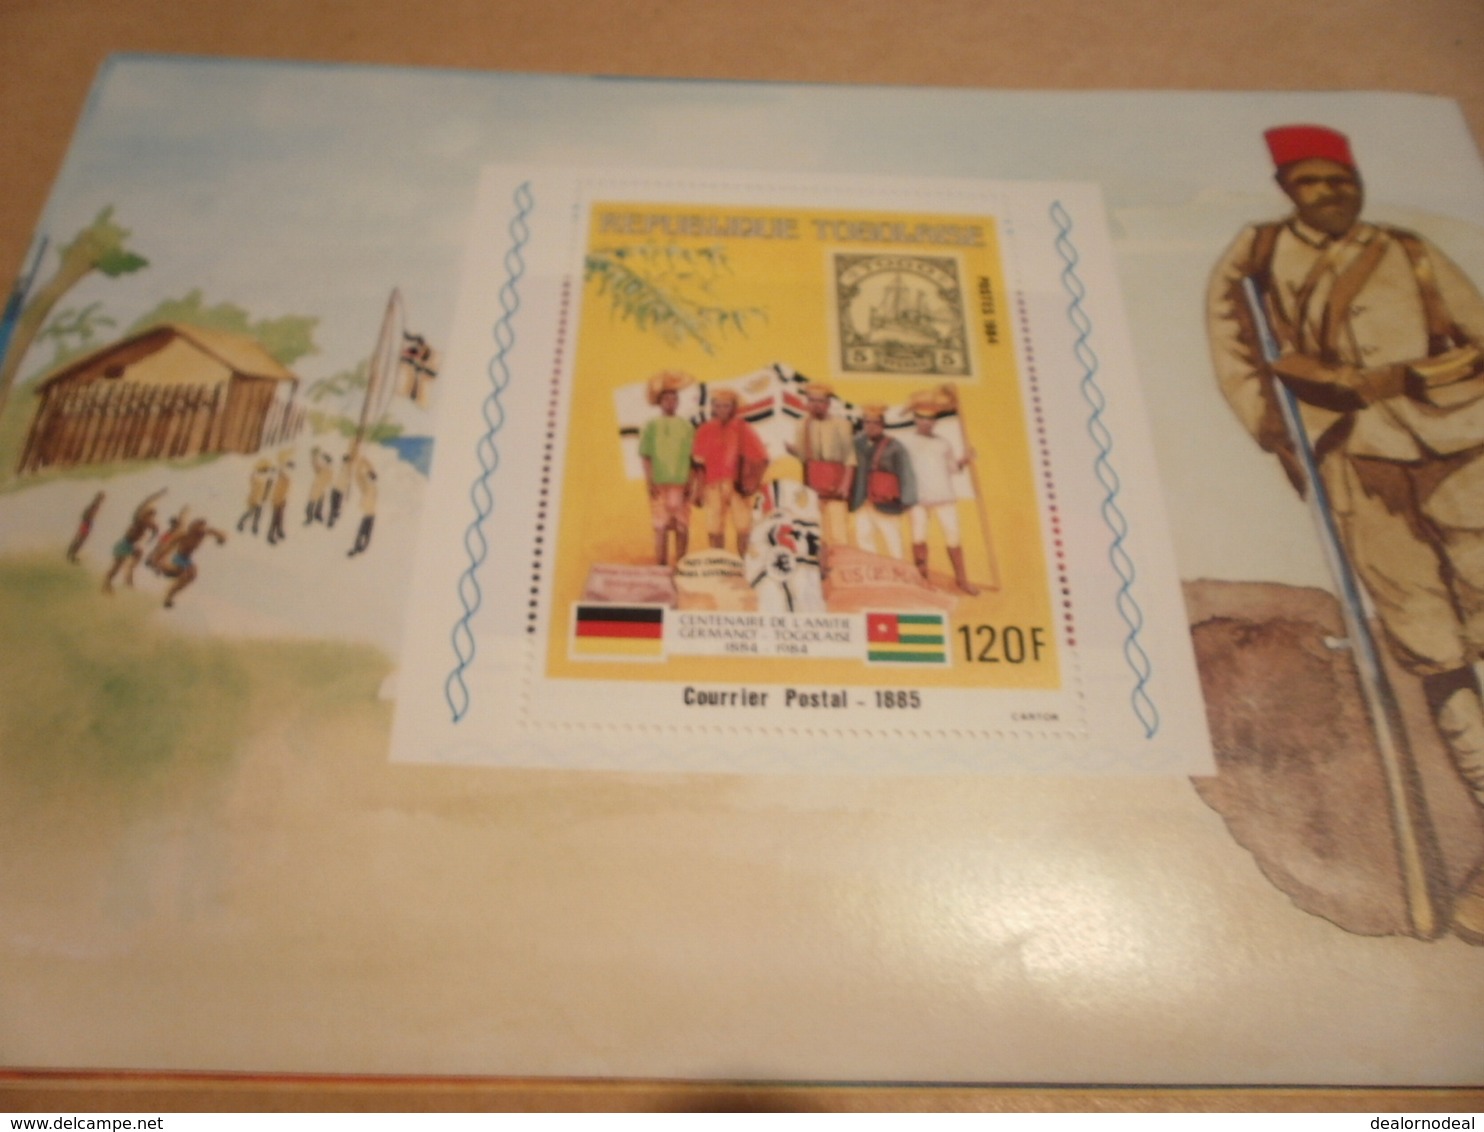 Miniature Sheet 1984 Togolaise Togo German Courrier Postal Centenary 1885 - Togo (1960-...)